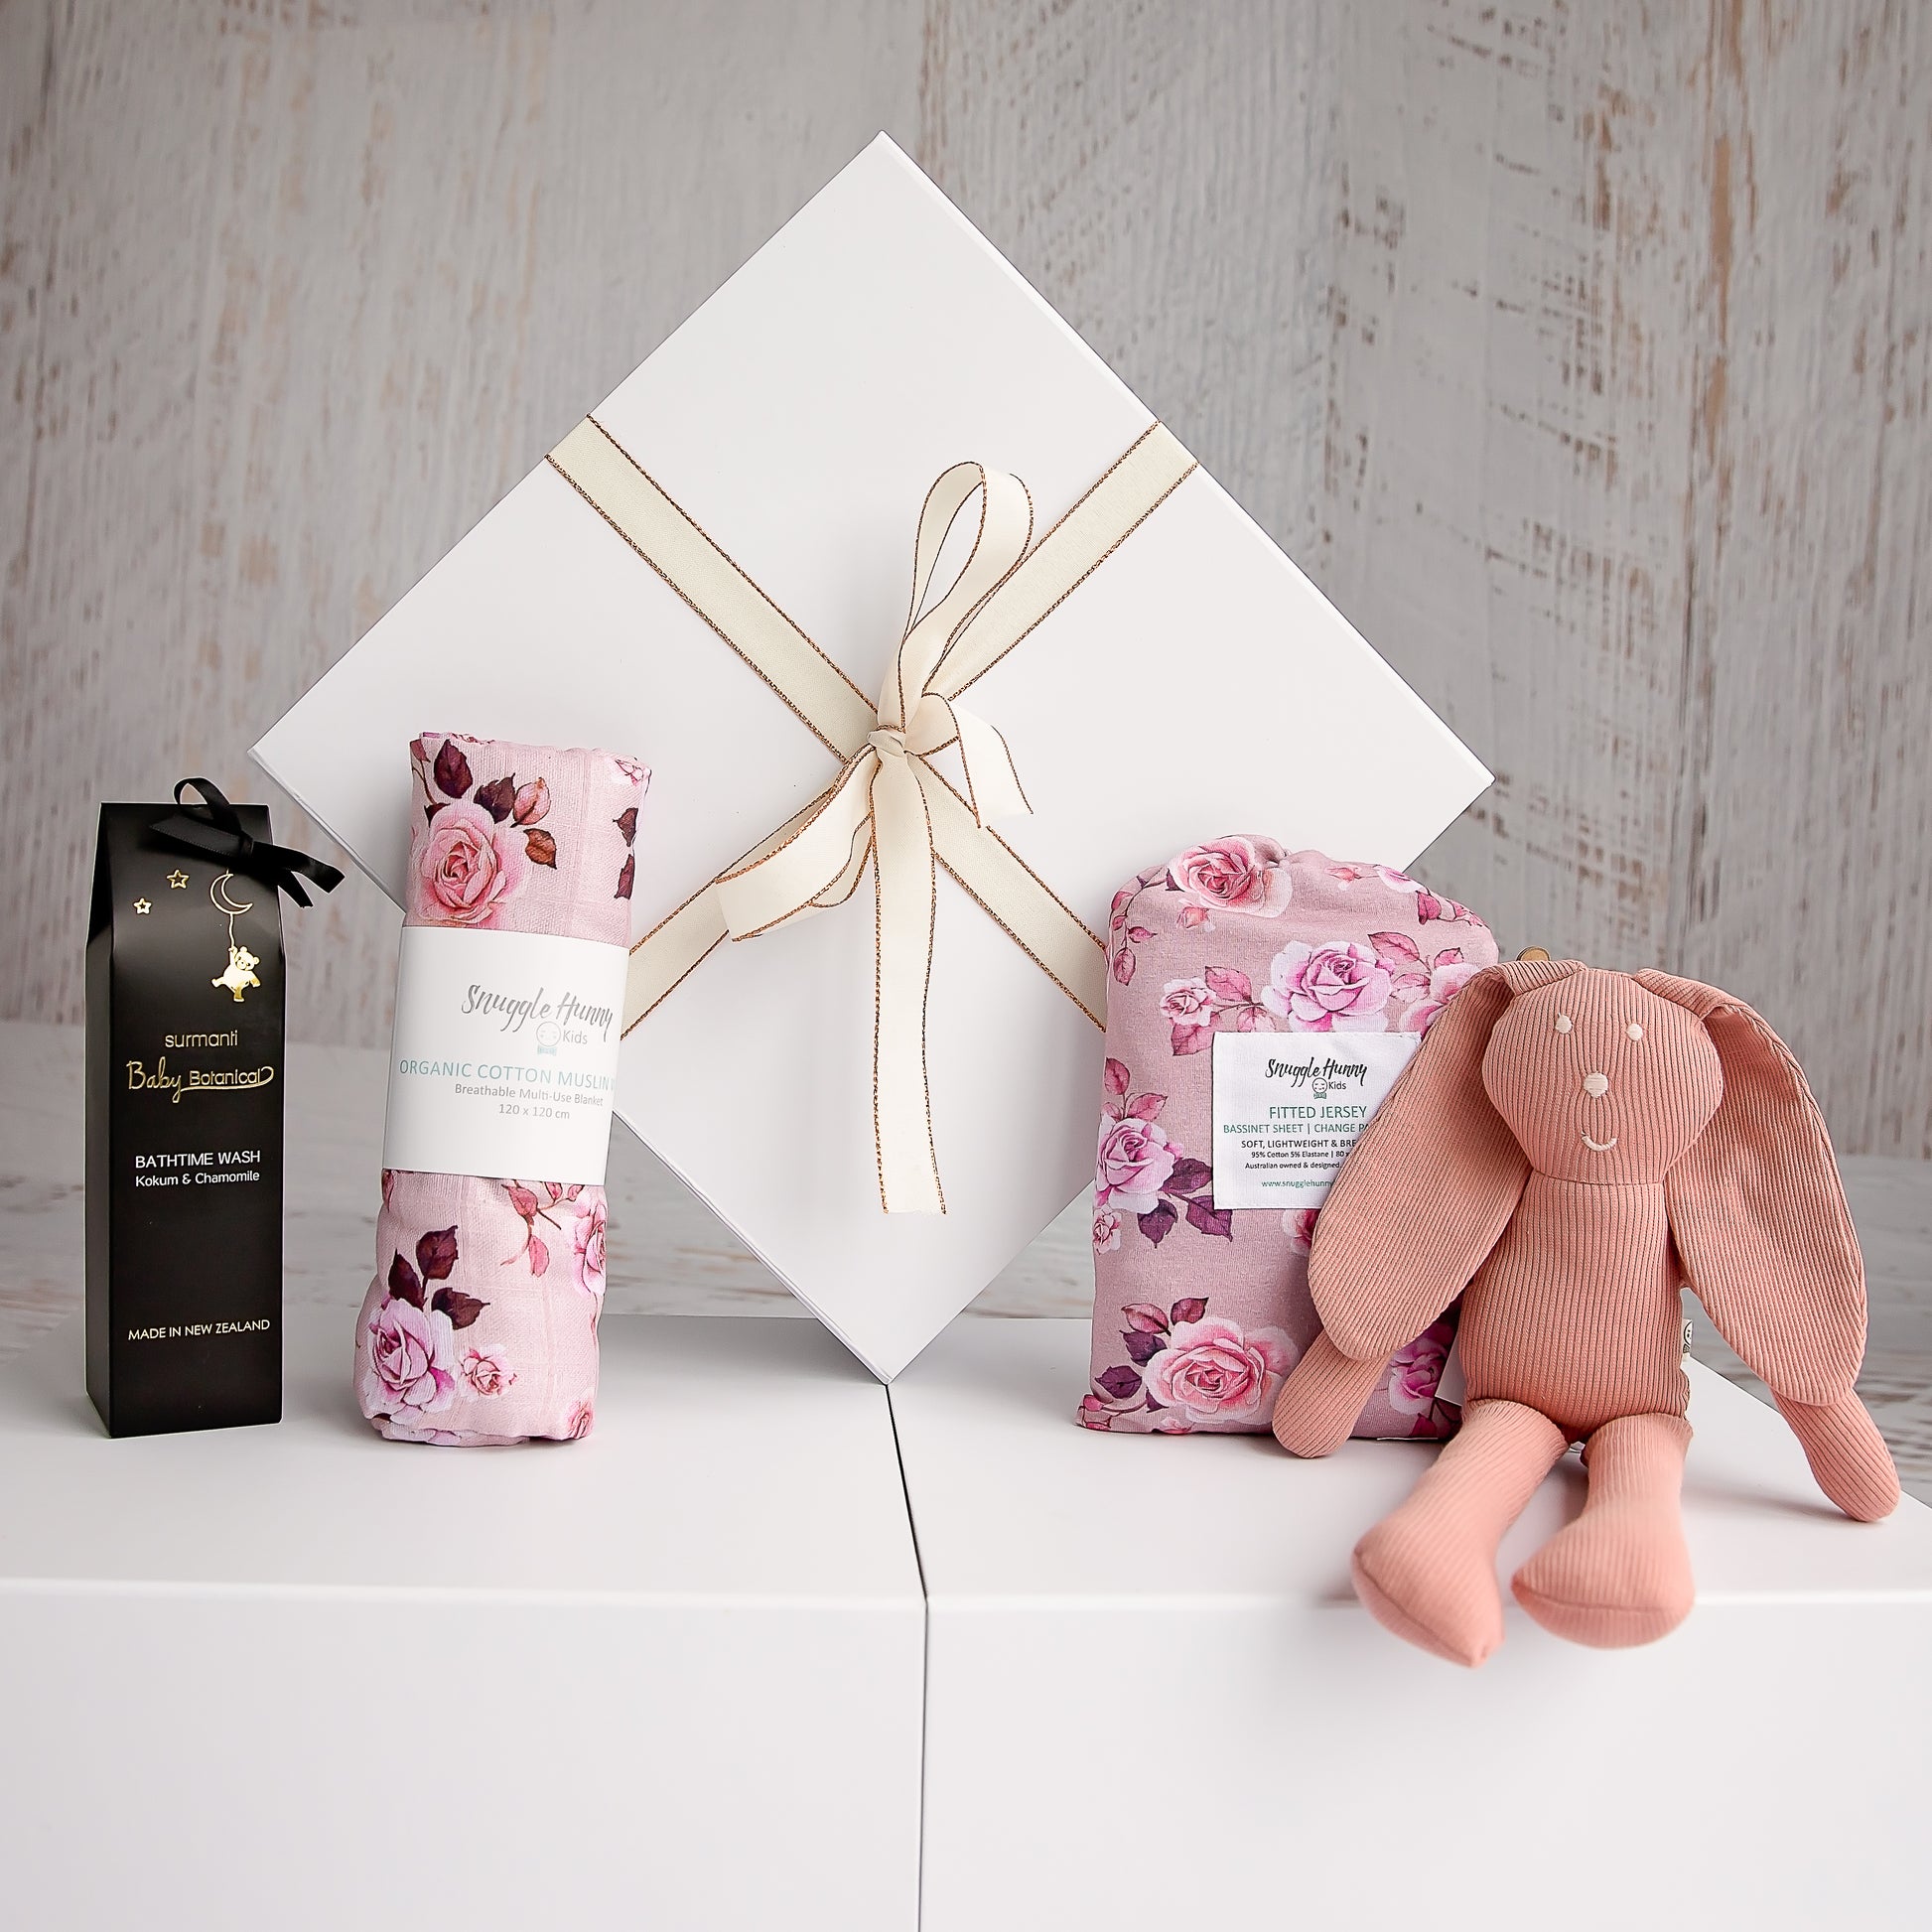 Flourish Maternity online NZ mum and baby store - Baby girl gift box New Zealand.